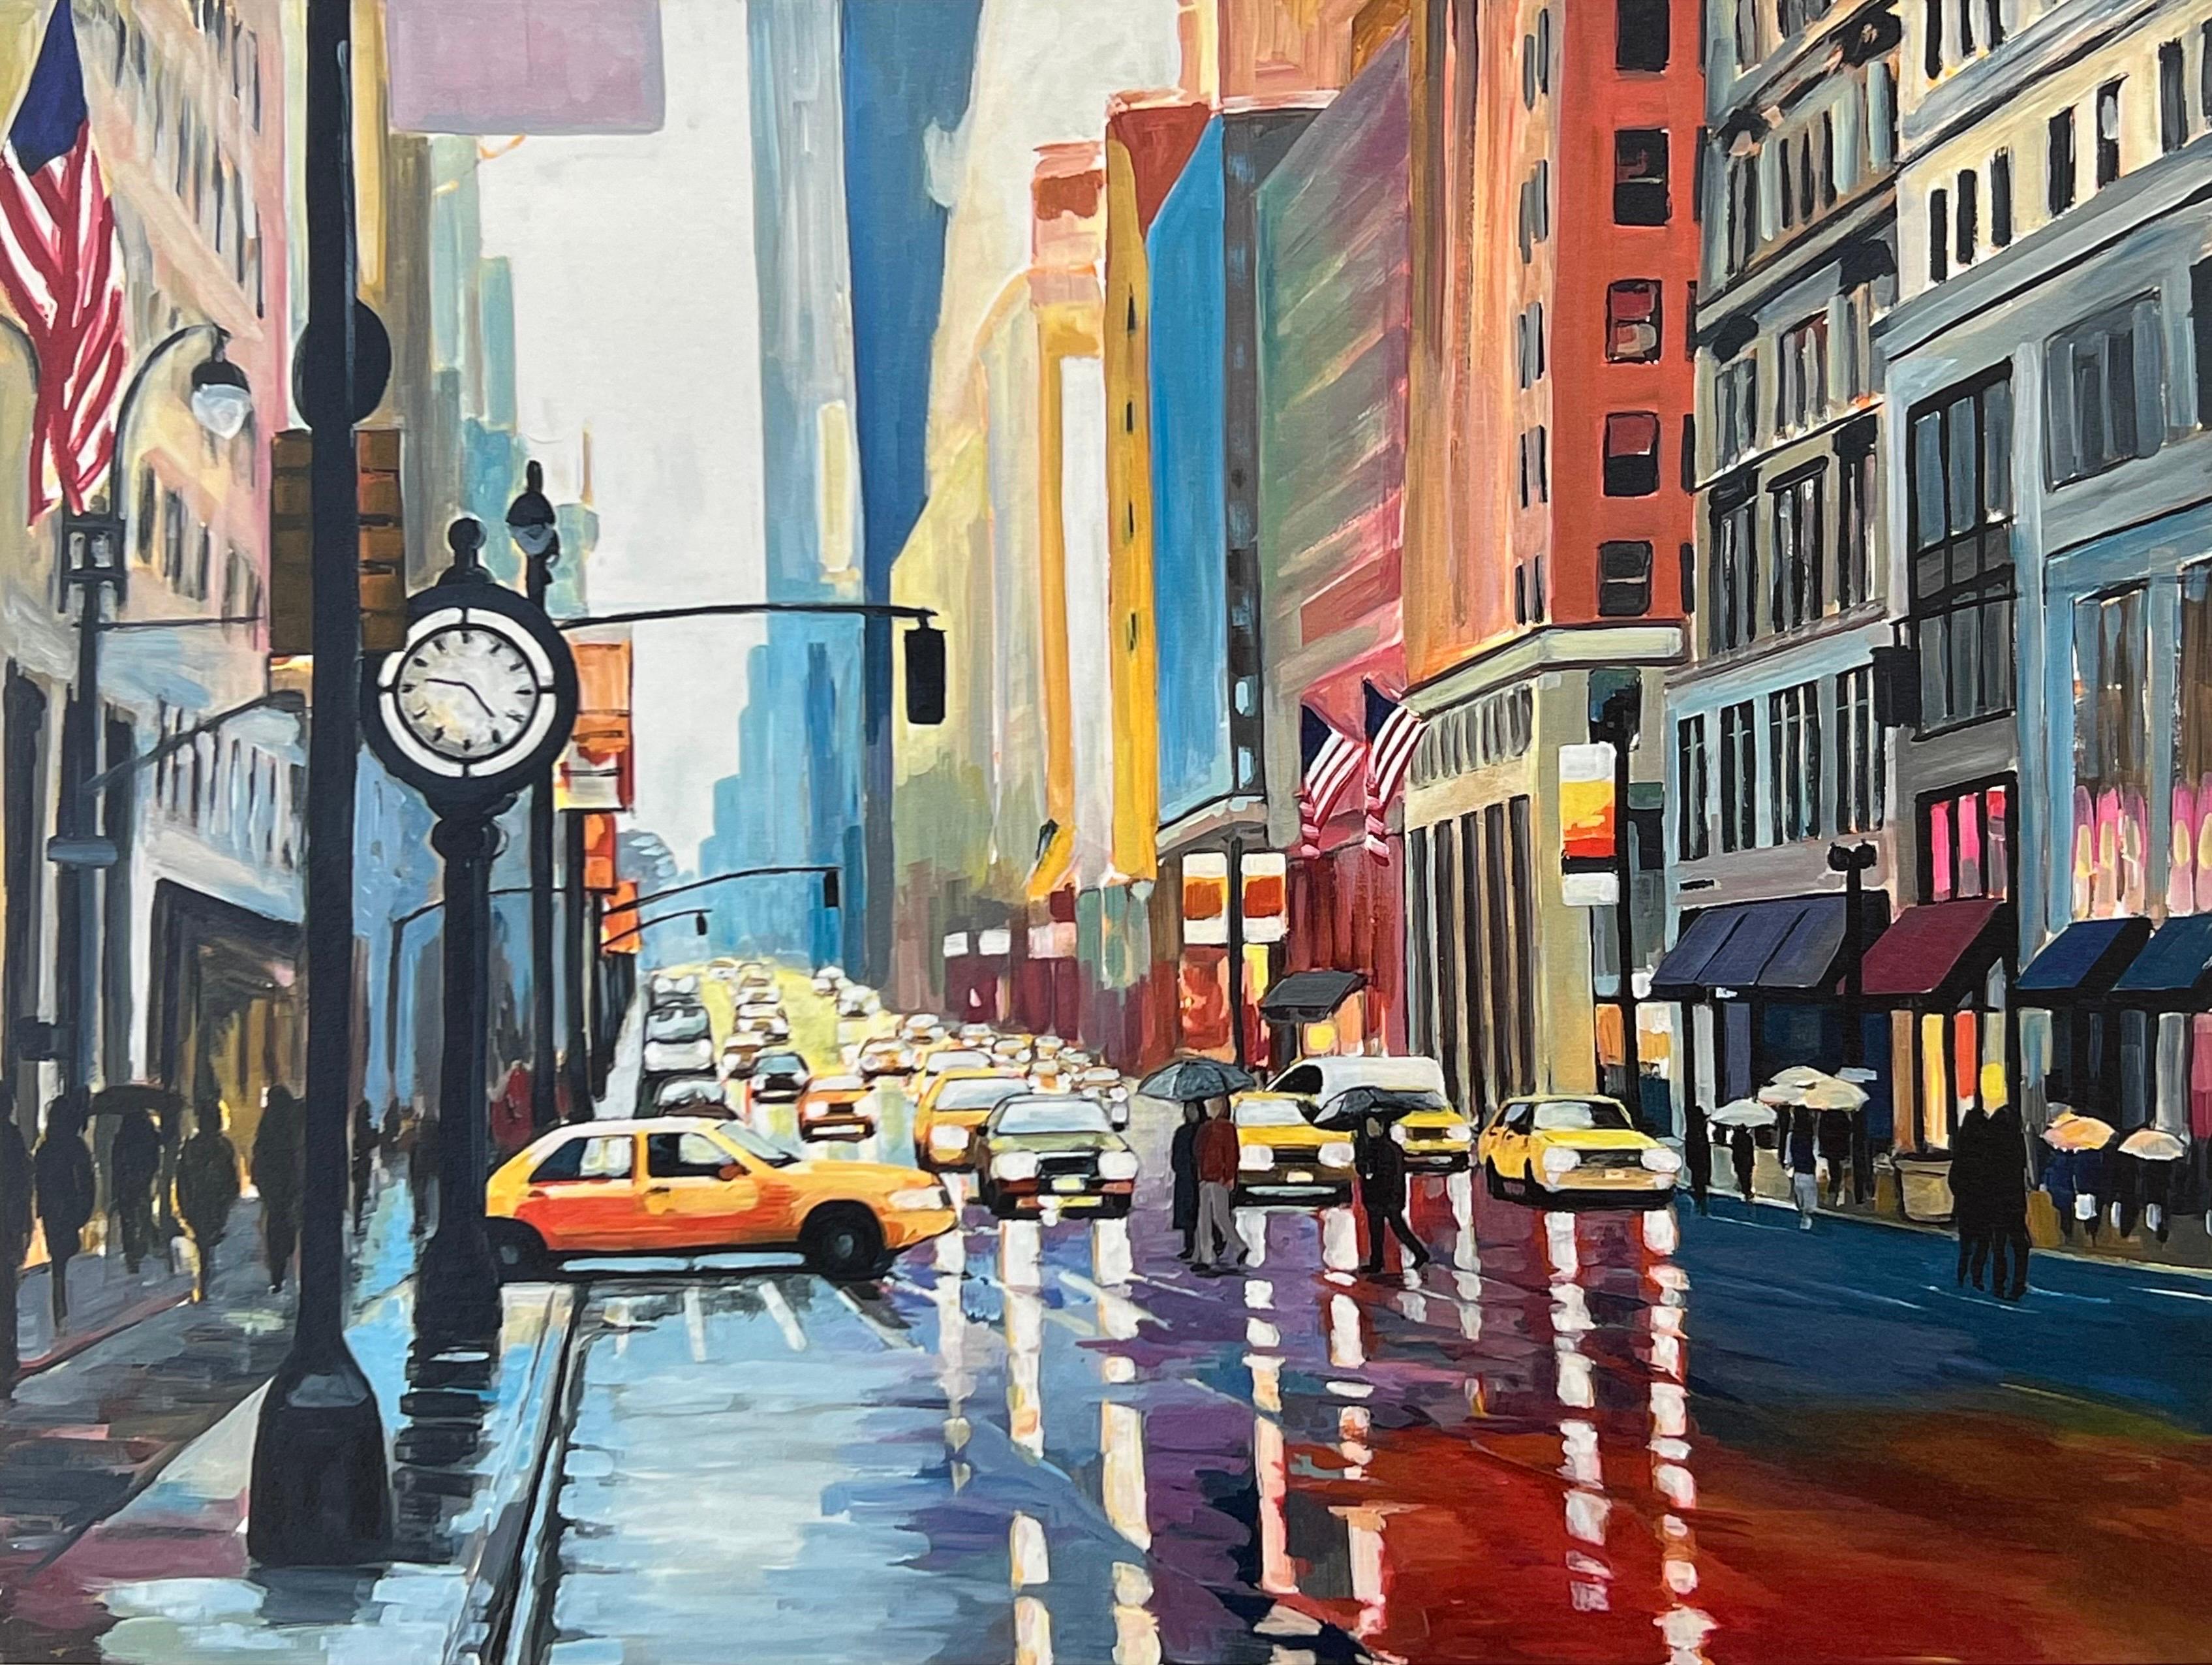 Impression de haute qualité de la peinture Rain III de New York par un artiste urbain britannique de premier plan